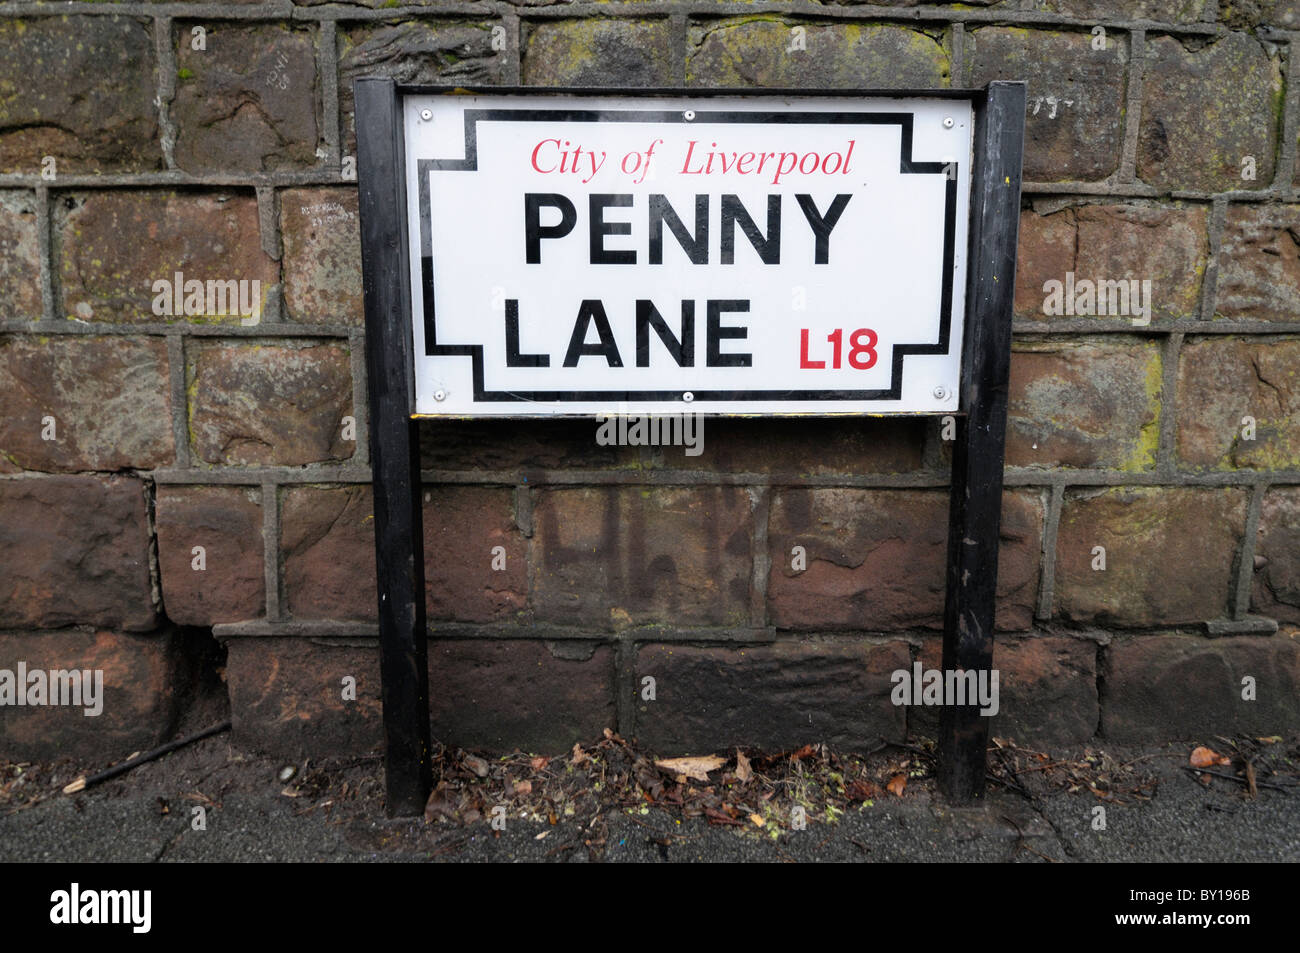 Penny Lane street sign à Liverpool. Penny Lane a été rendu célèbre par les Beatles l'enregistrement du même nom. Banque D'Images